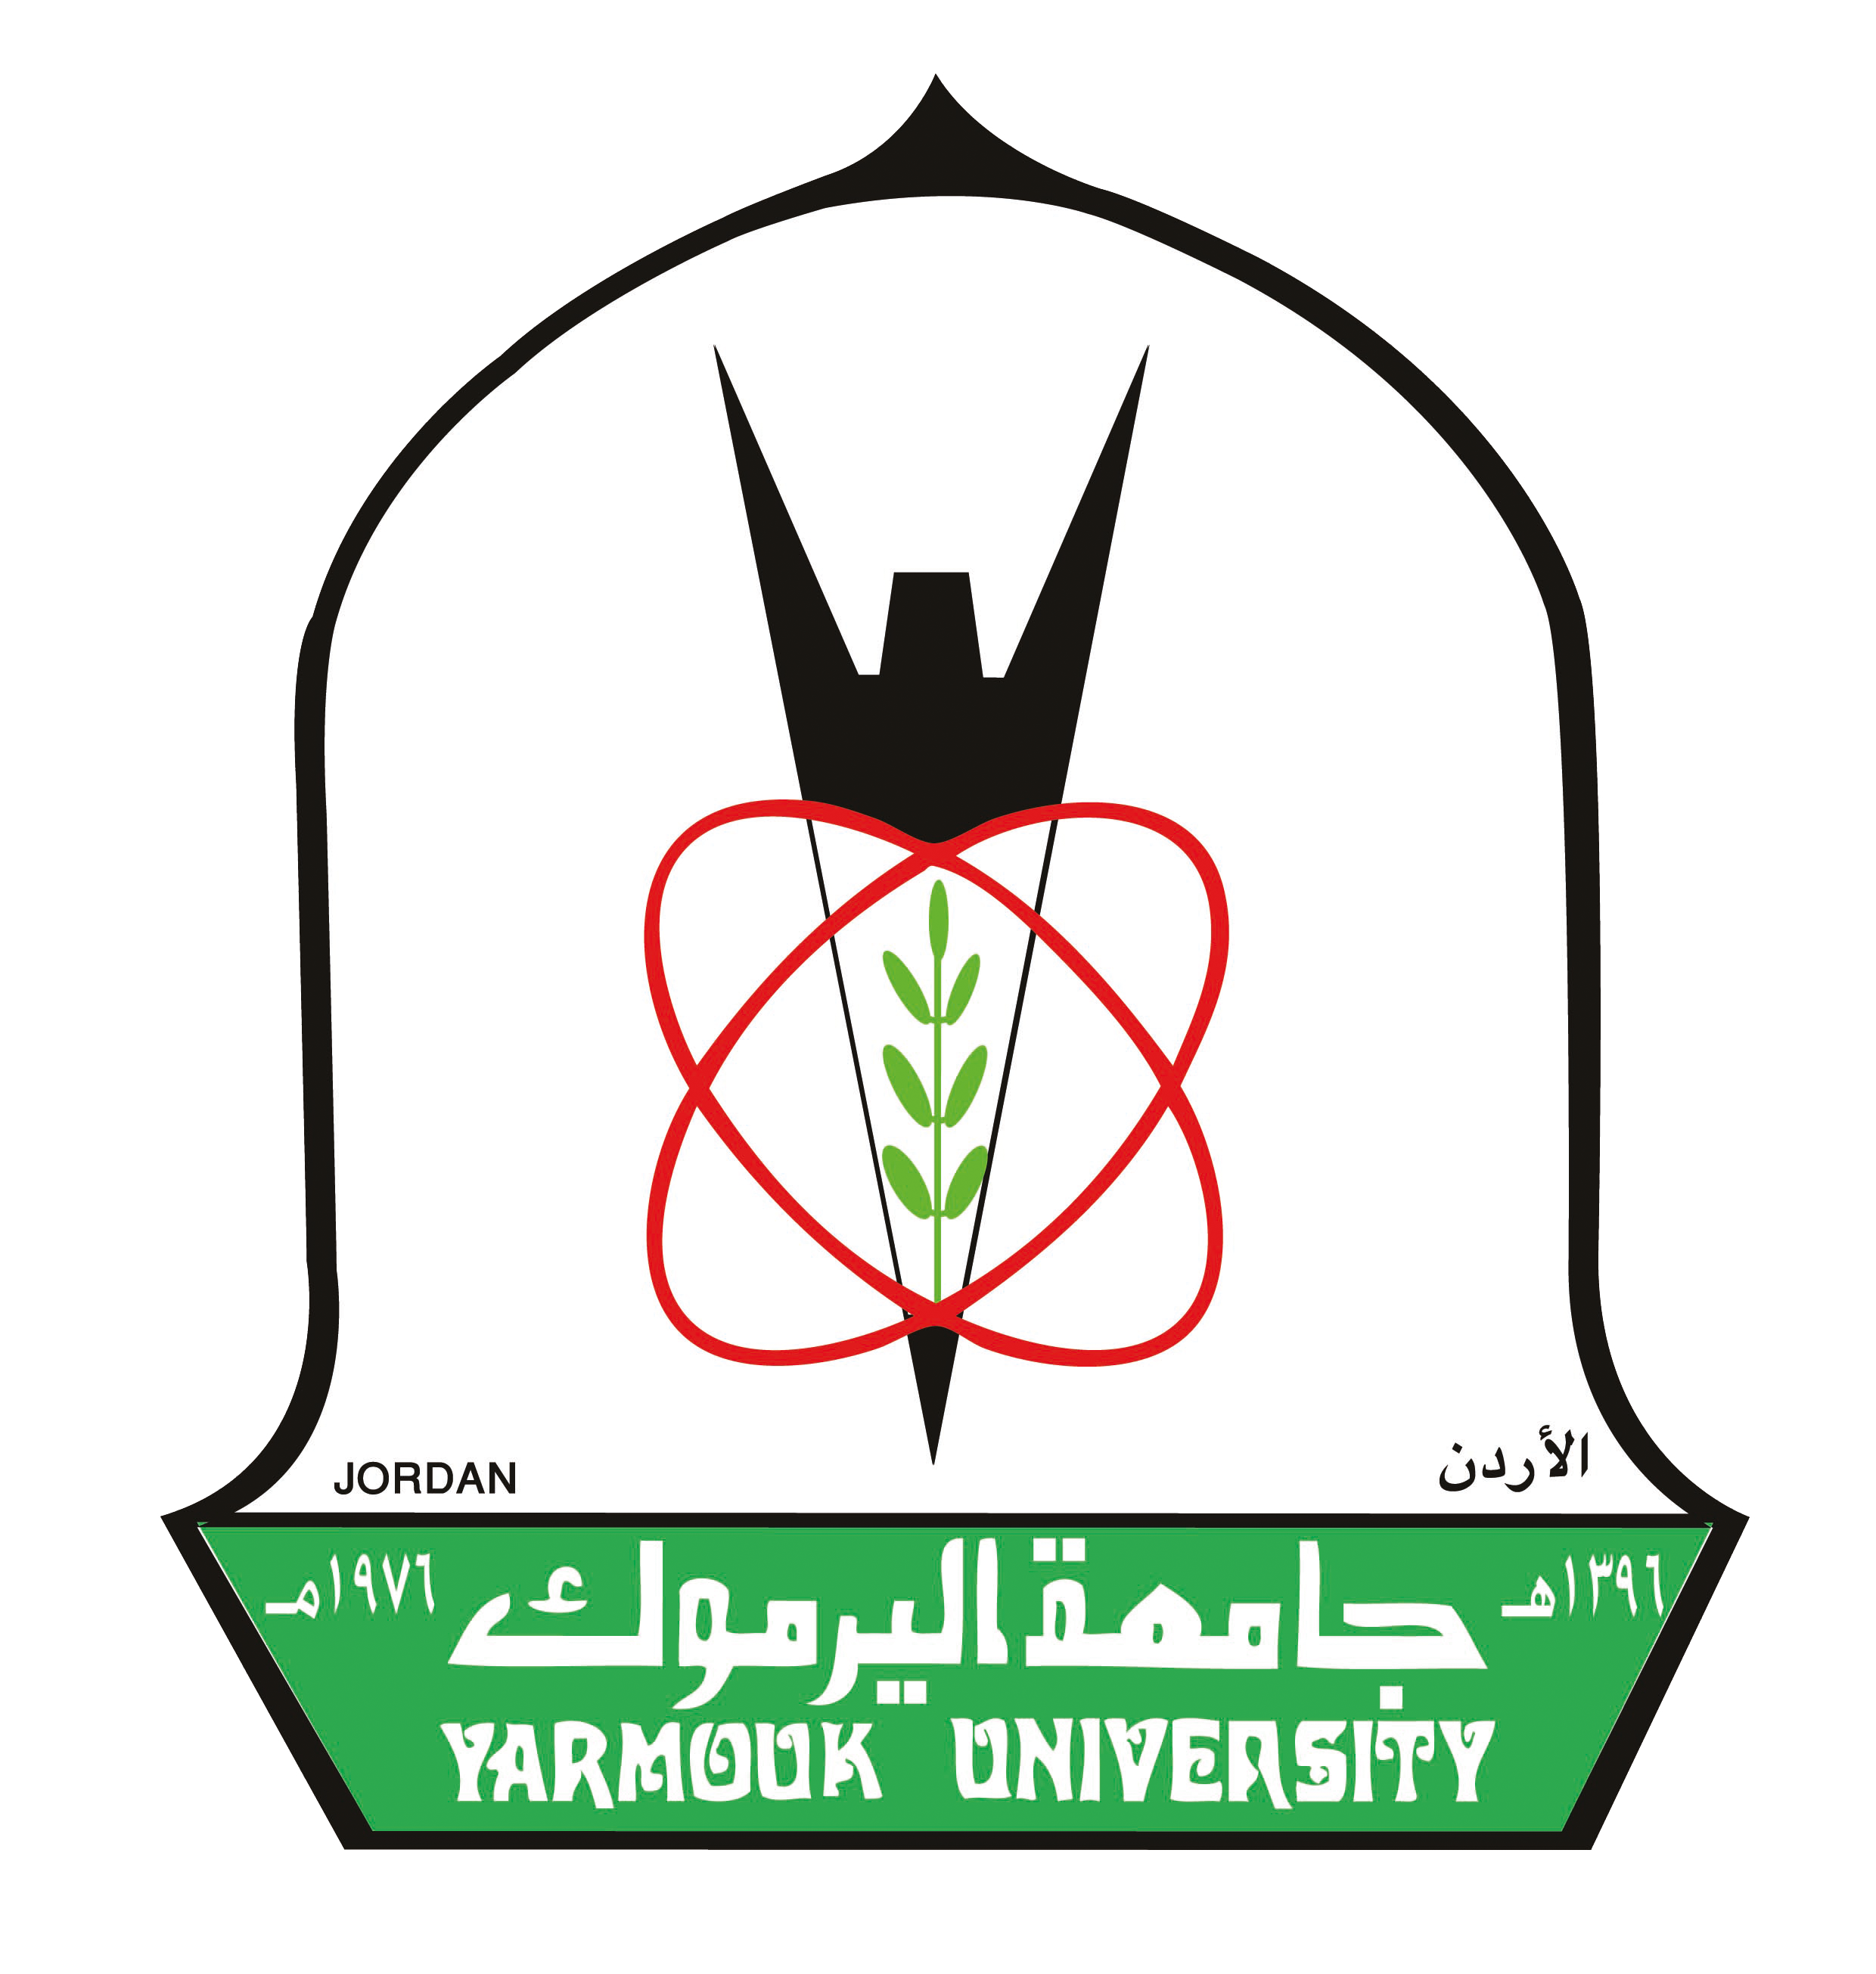 LOGO Yarmouk University 